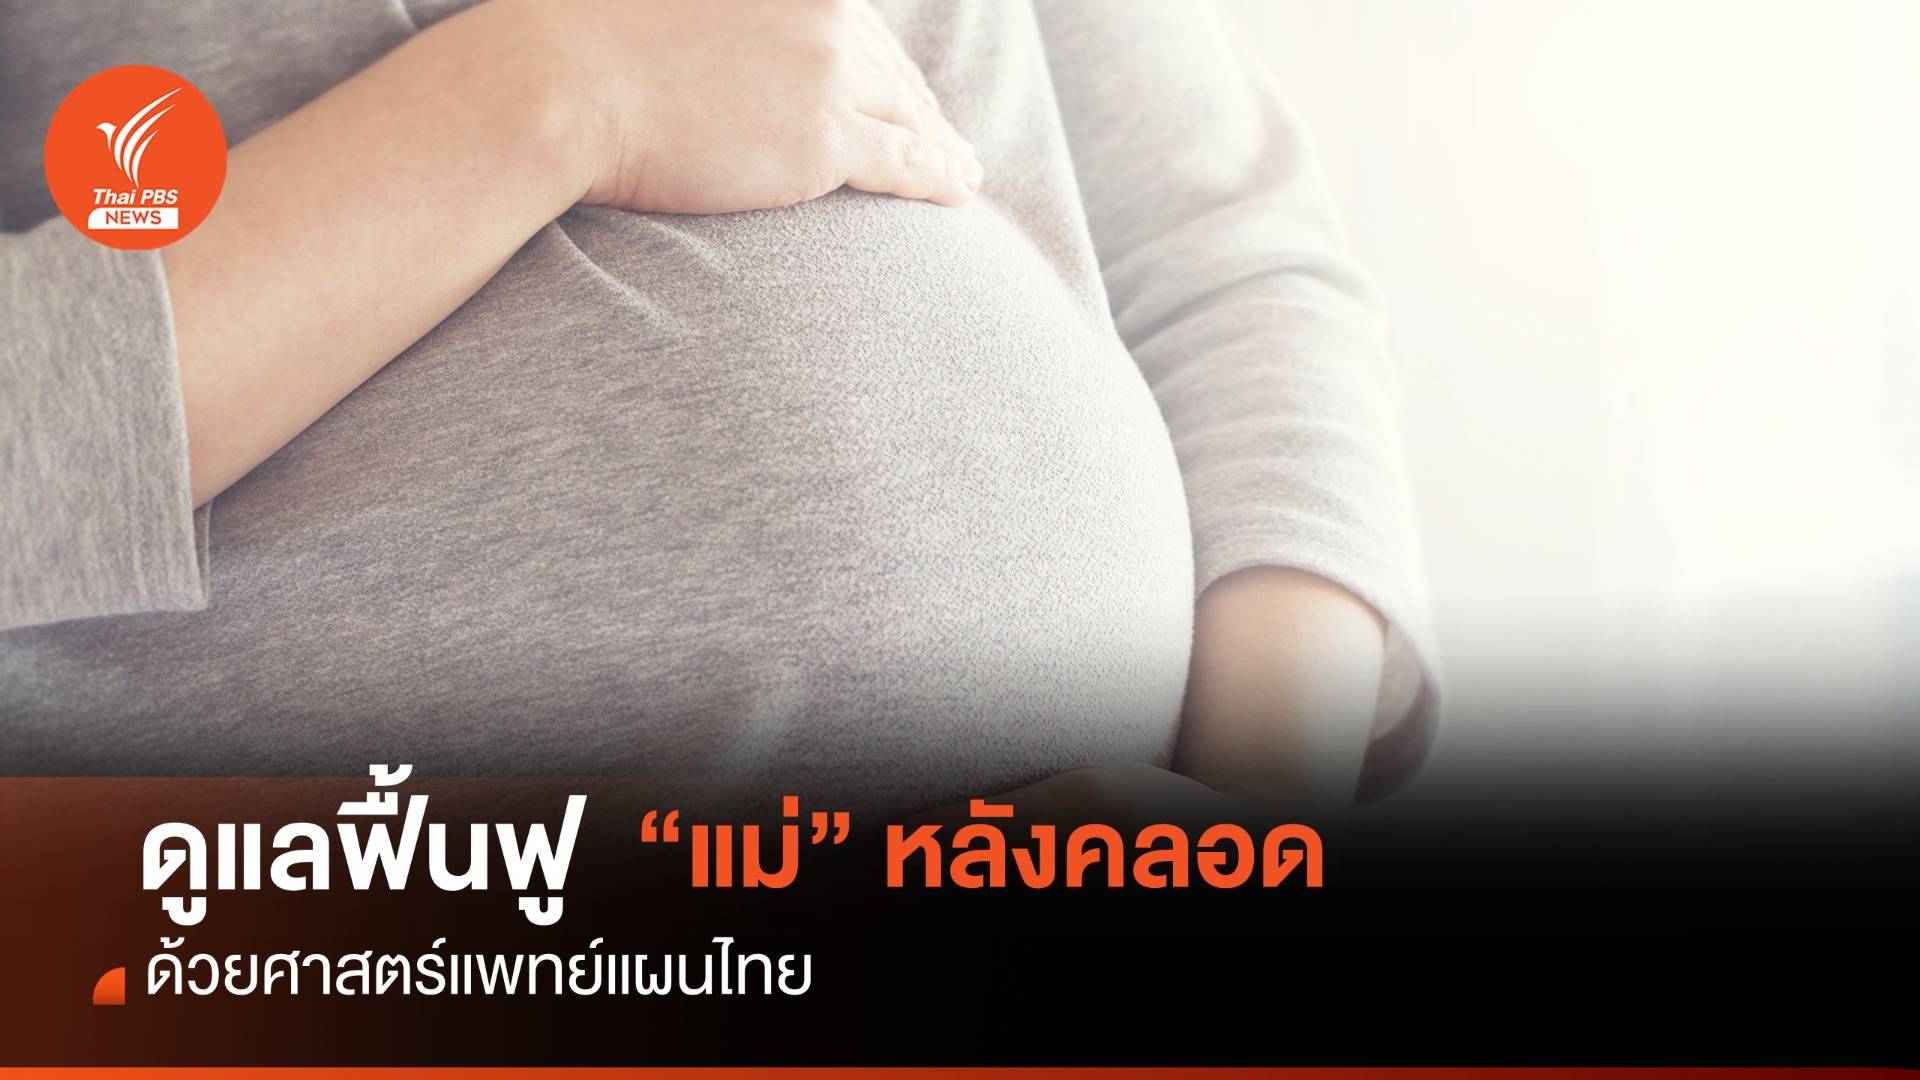 ศาสตร์แพทย์แผนไทย ดูแลฟื้นฟูสุขภาพ "แม่" หลังคลอด